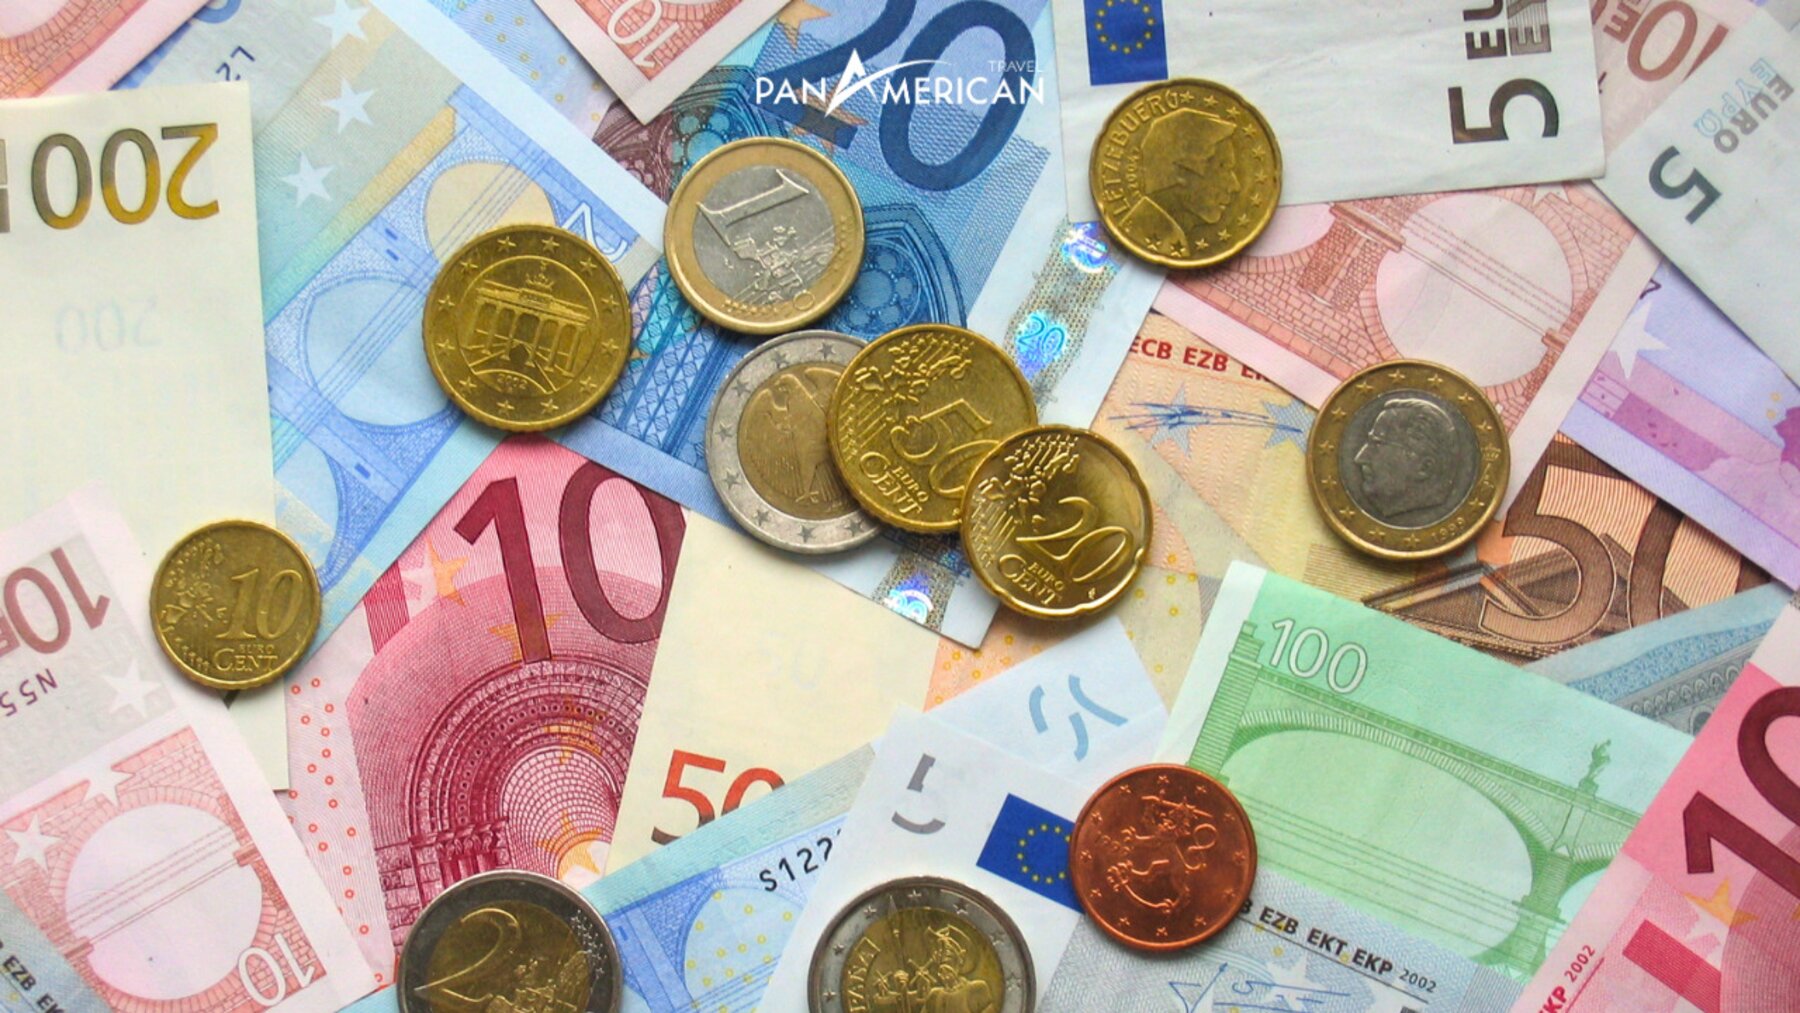 Đồng tiền chung châu Âu là gì? 1 Euro bằng bao nhiêu tiền Việt? - Gallery Image